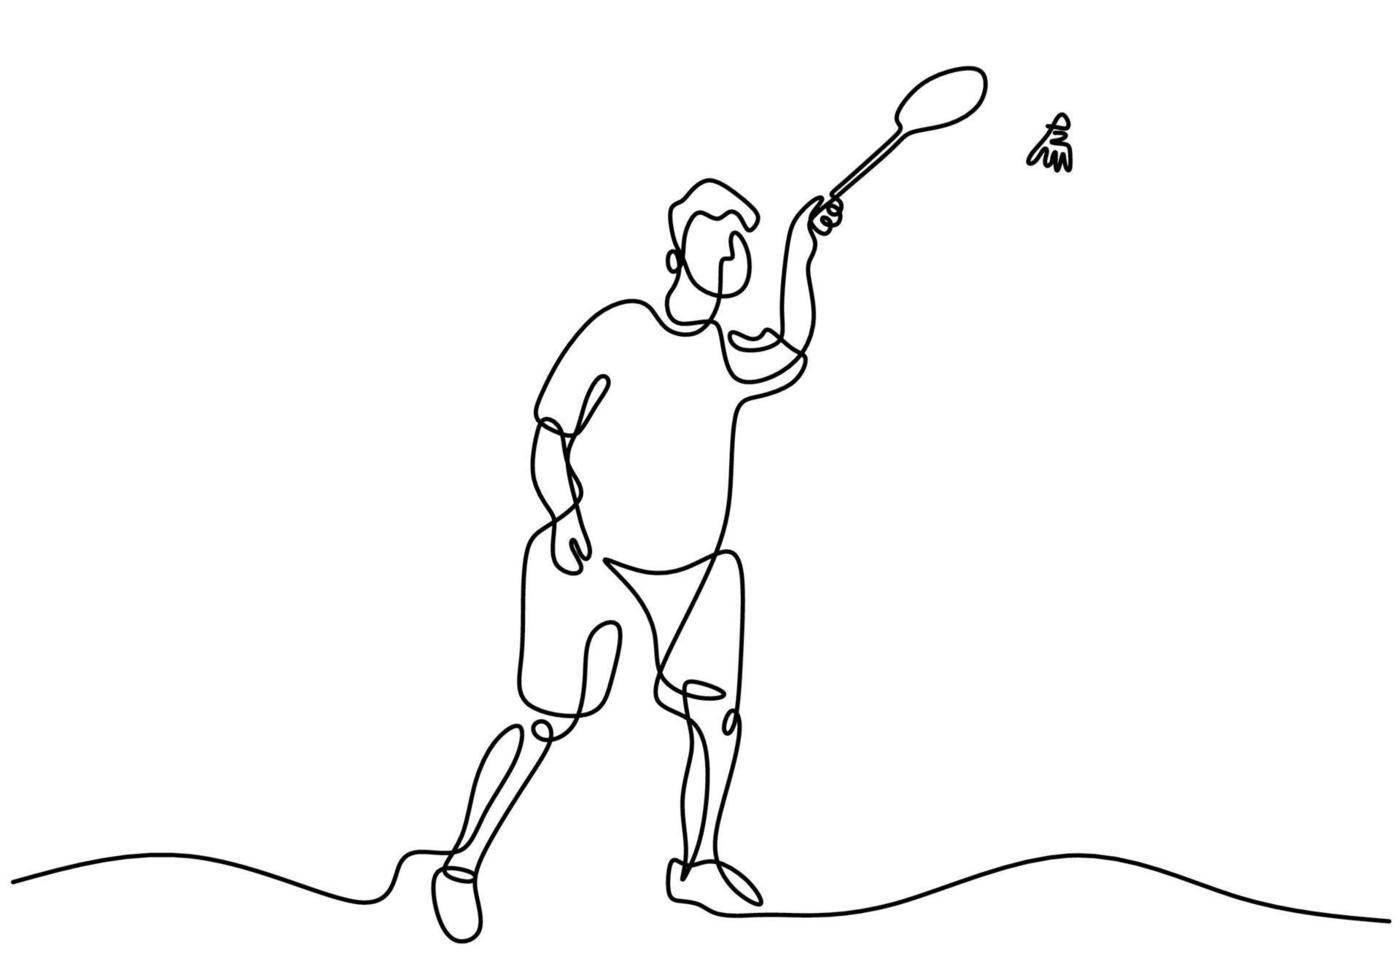 doorlopende lijntekening van man badminton spelen. karakter een badmintonspeler speelt met een racket geïsoleerd op een witte achtergrond. sporttoernooi concept minimalistisch ontwerp. vector illustratie